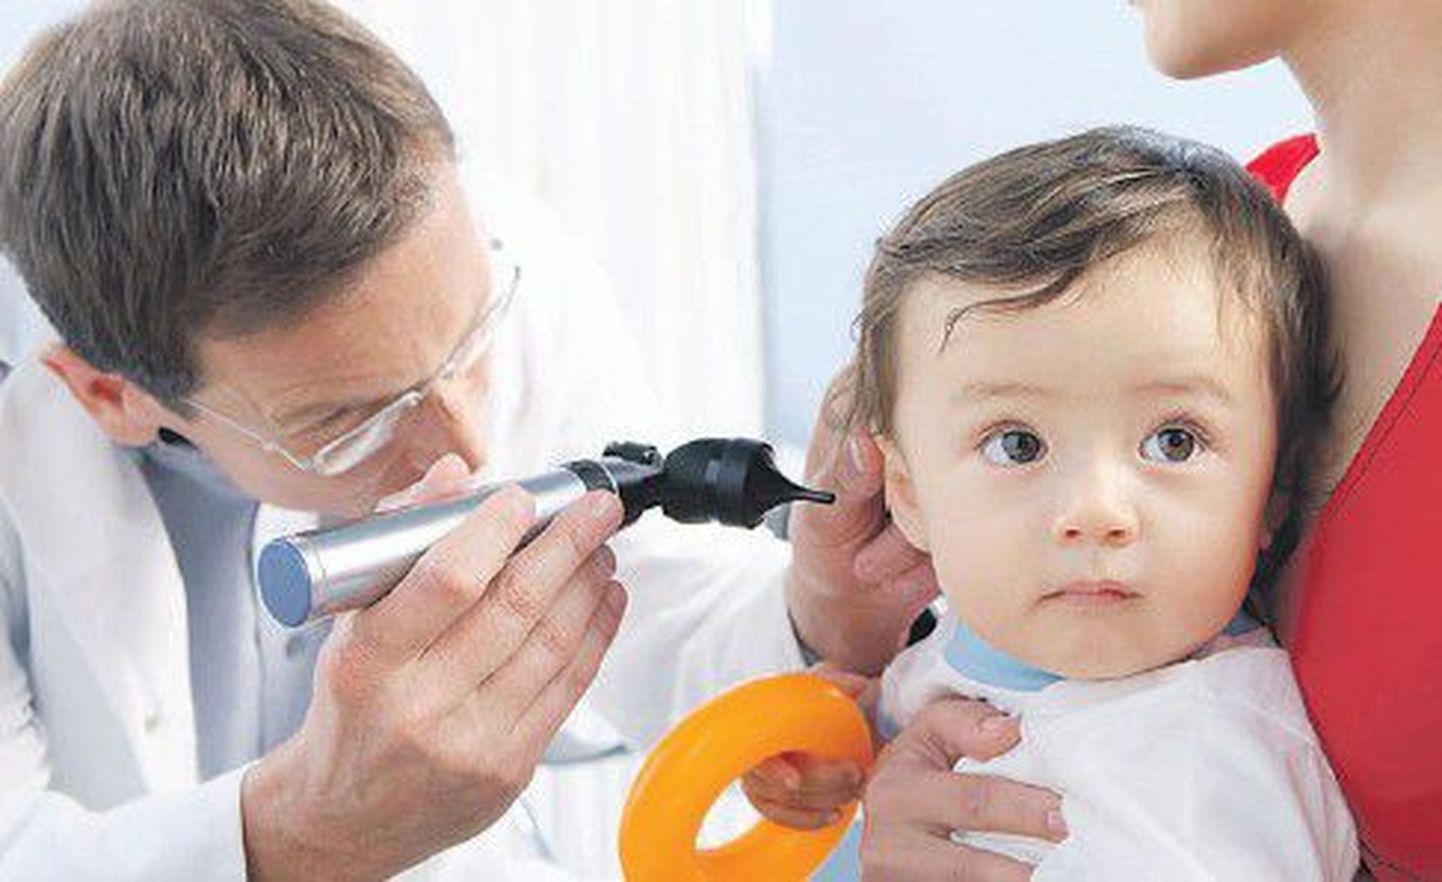 90 процентов всех дошкольников уже успели переболеть острым воспалением среднего уха.